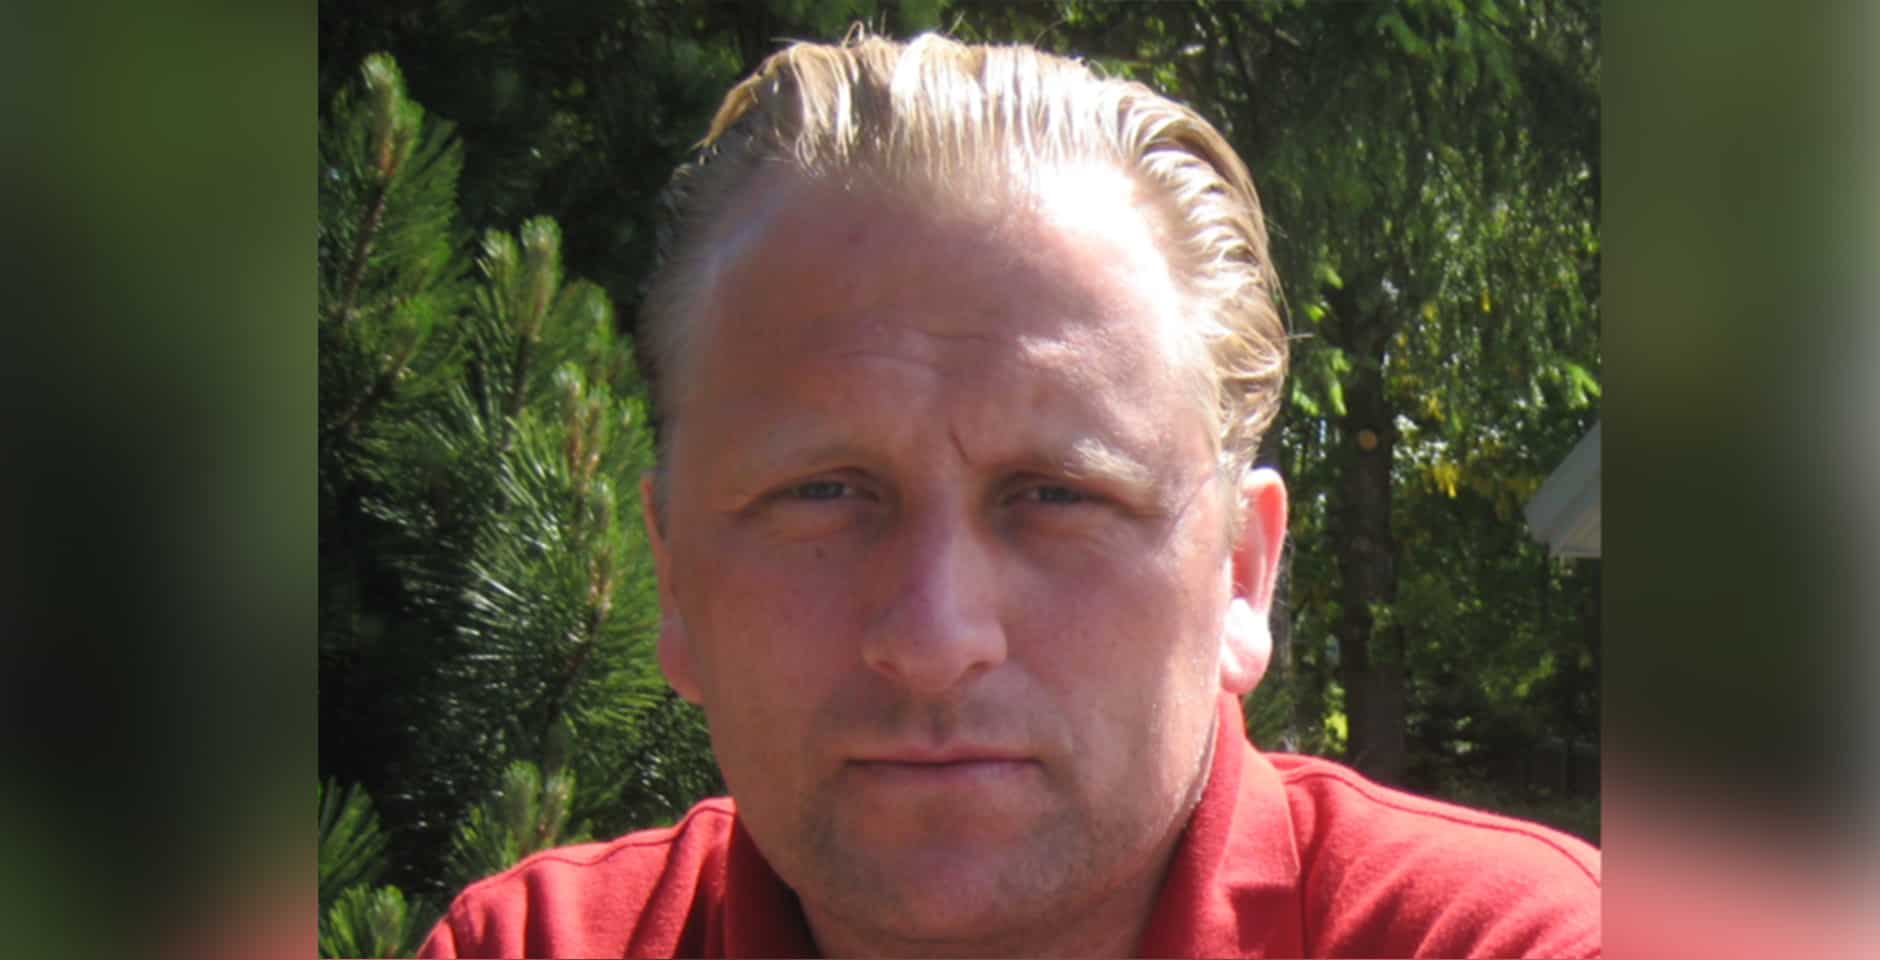 Olafur Sveinsson, en av Hjärnfondens stipendiater forskar om epilepsi vid Karolinska Institutet.